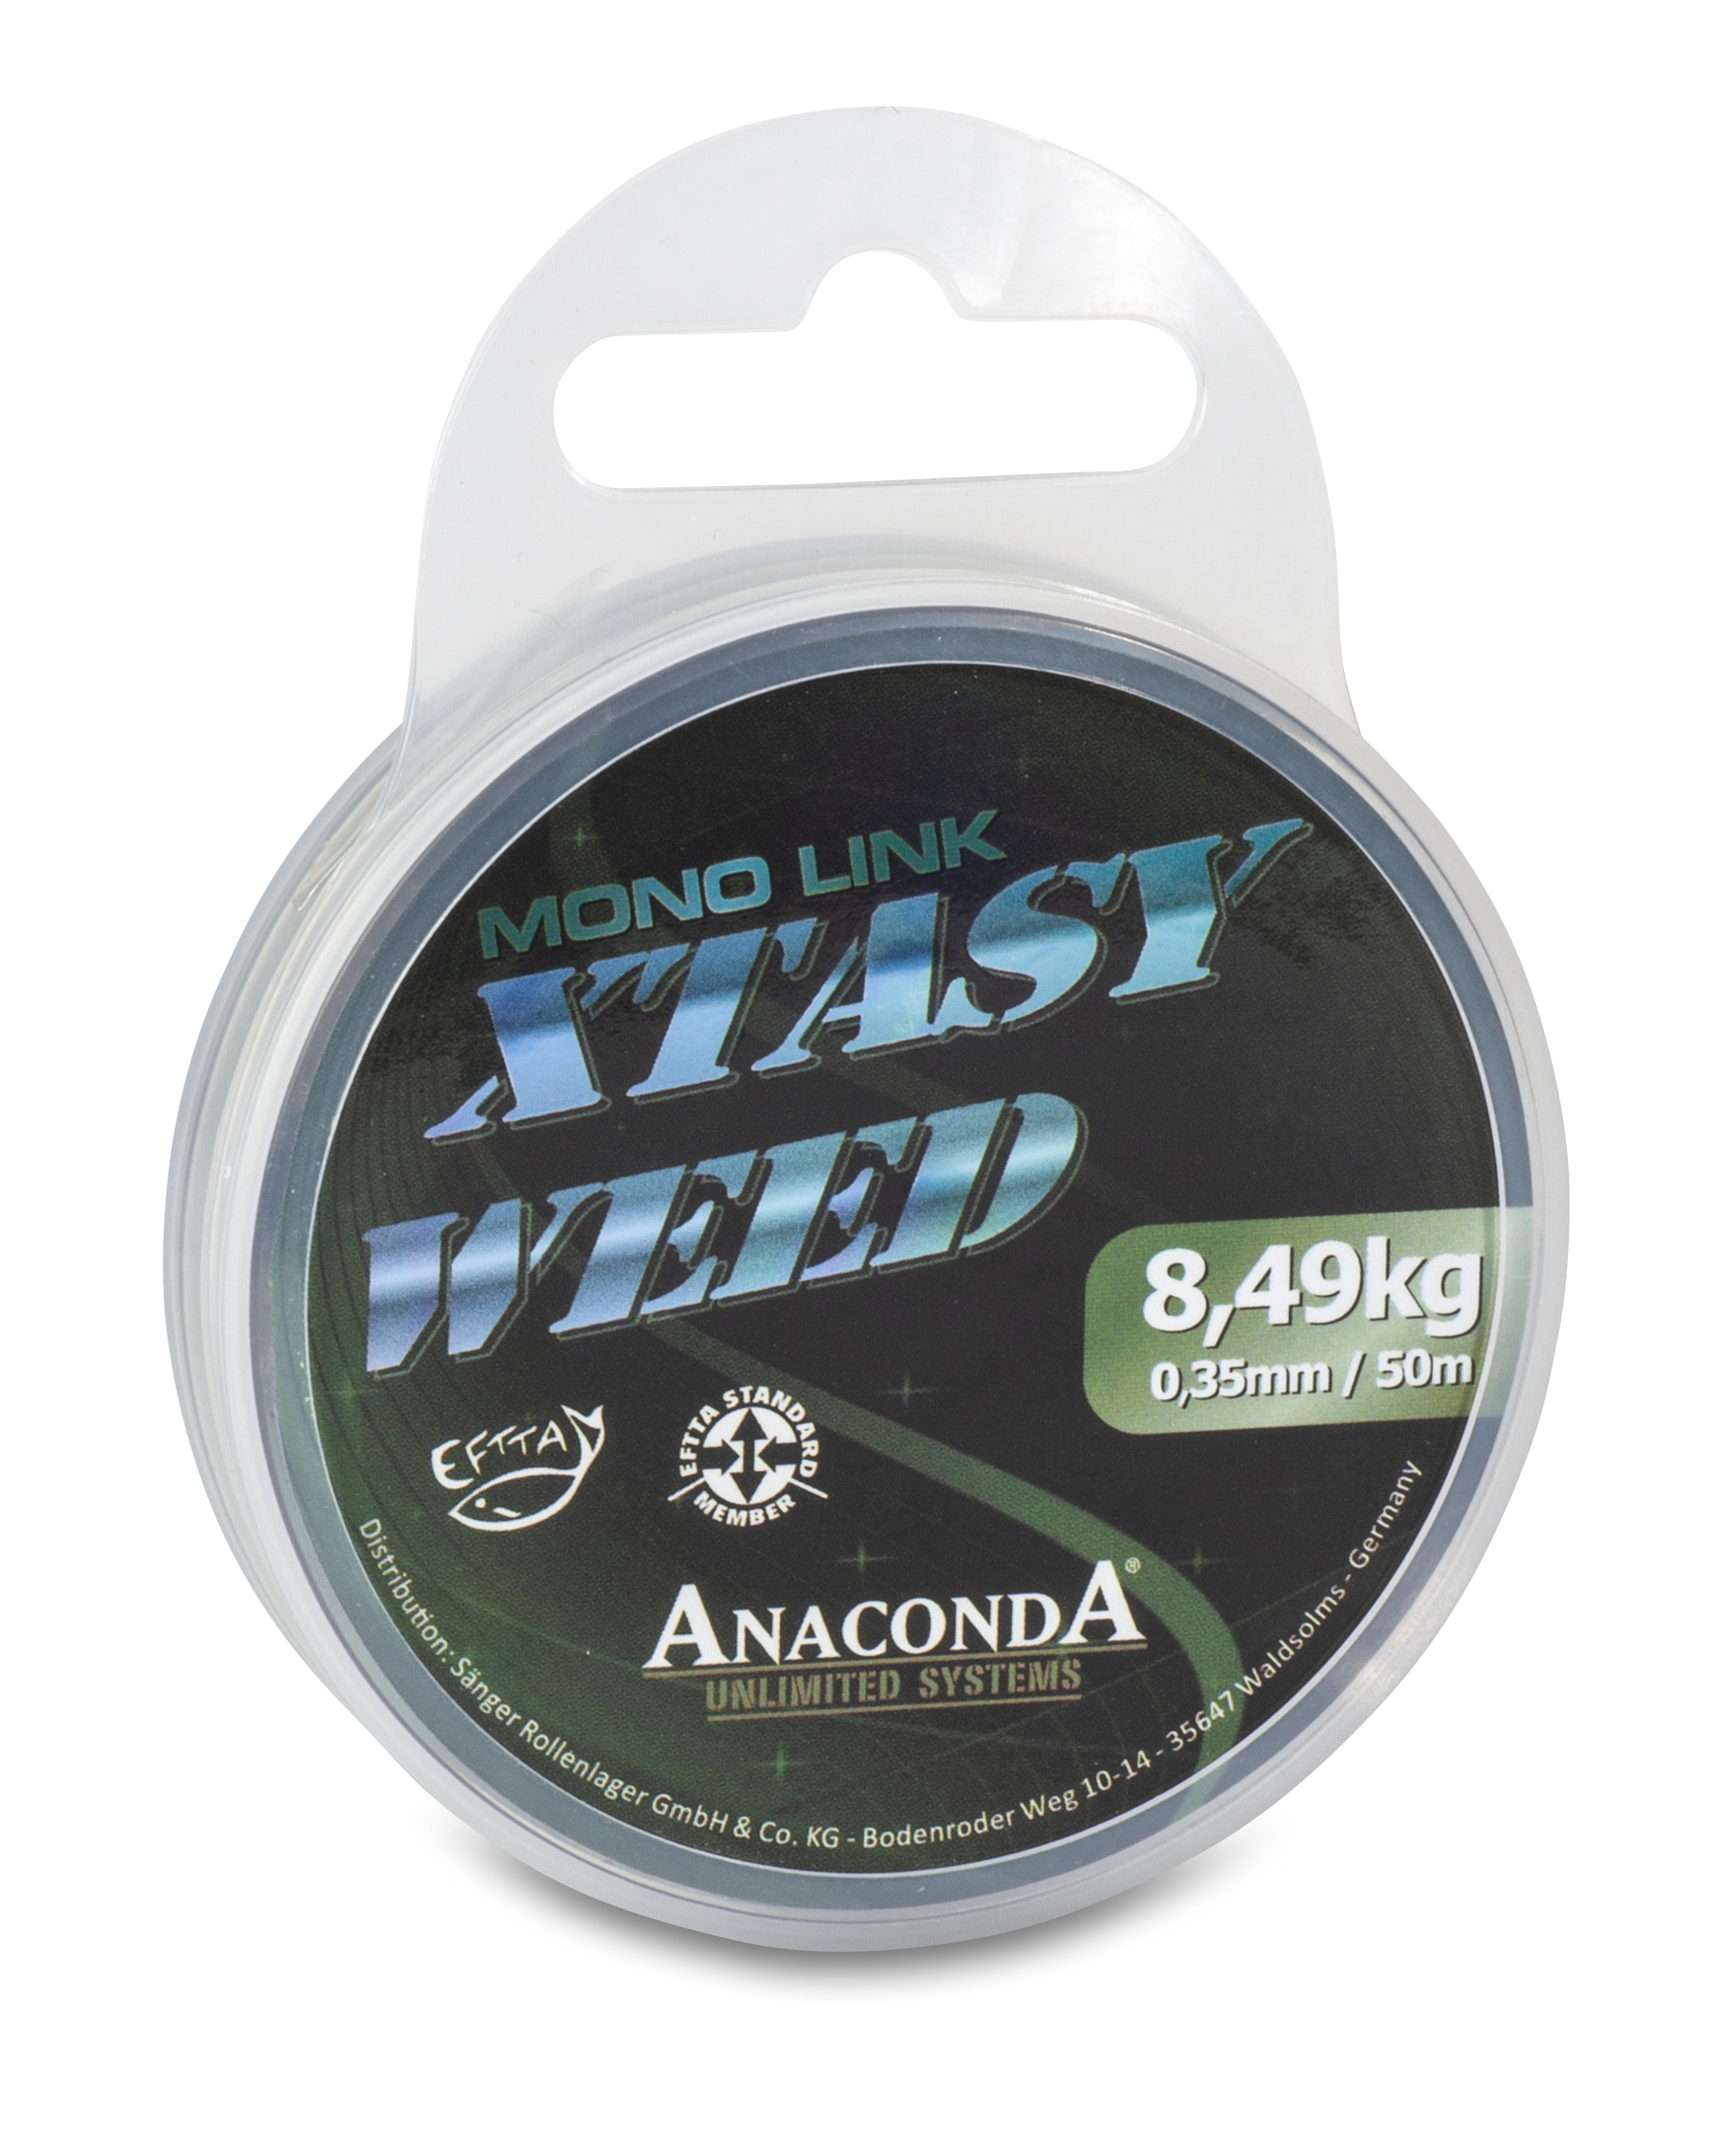 Anaconda Xtasy Weed Mono Link 0,50 mm 50 m-2424650